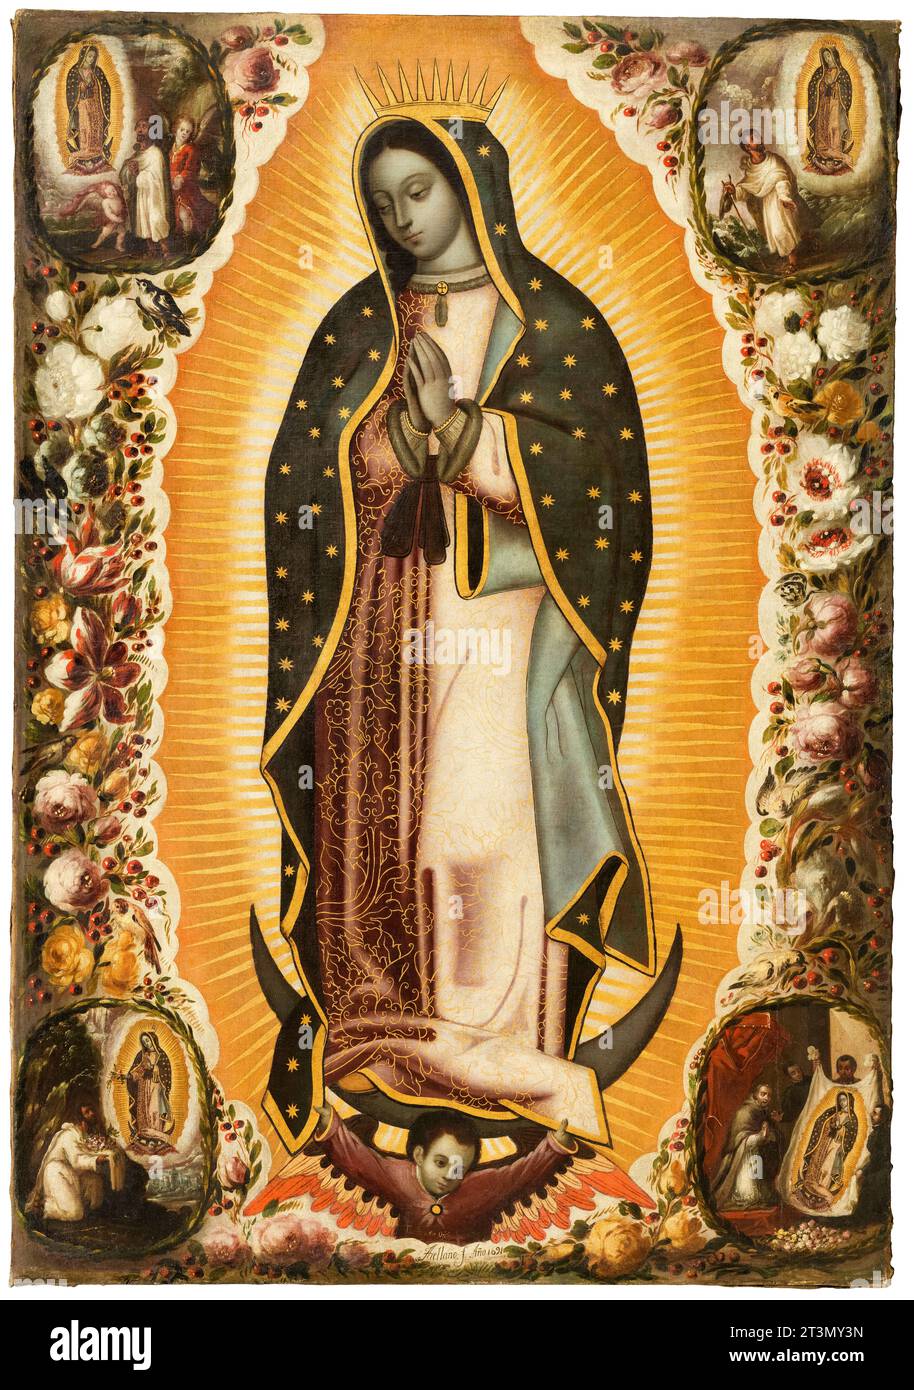 Vierge de Guadalupe (Virgen de Guadalupe), peinture à l'huile sur toile de Manuel de Arellano & Antonio de Arellano, 1691 Banque D'Images